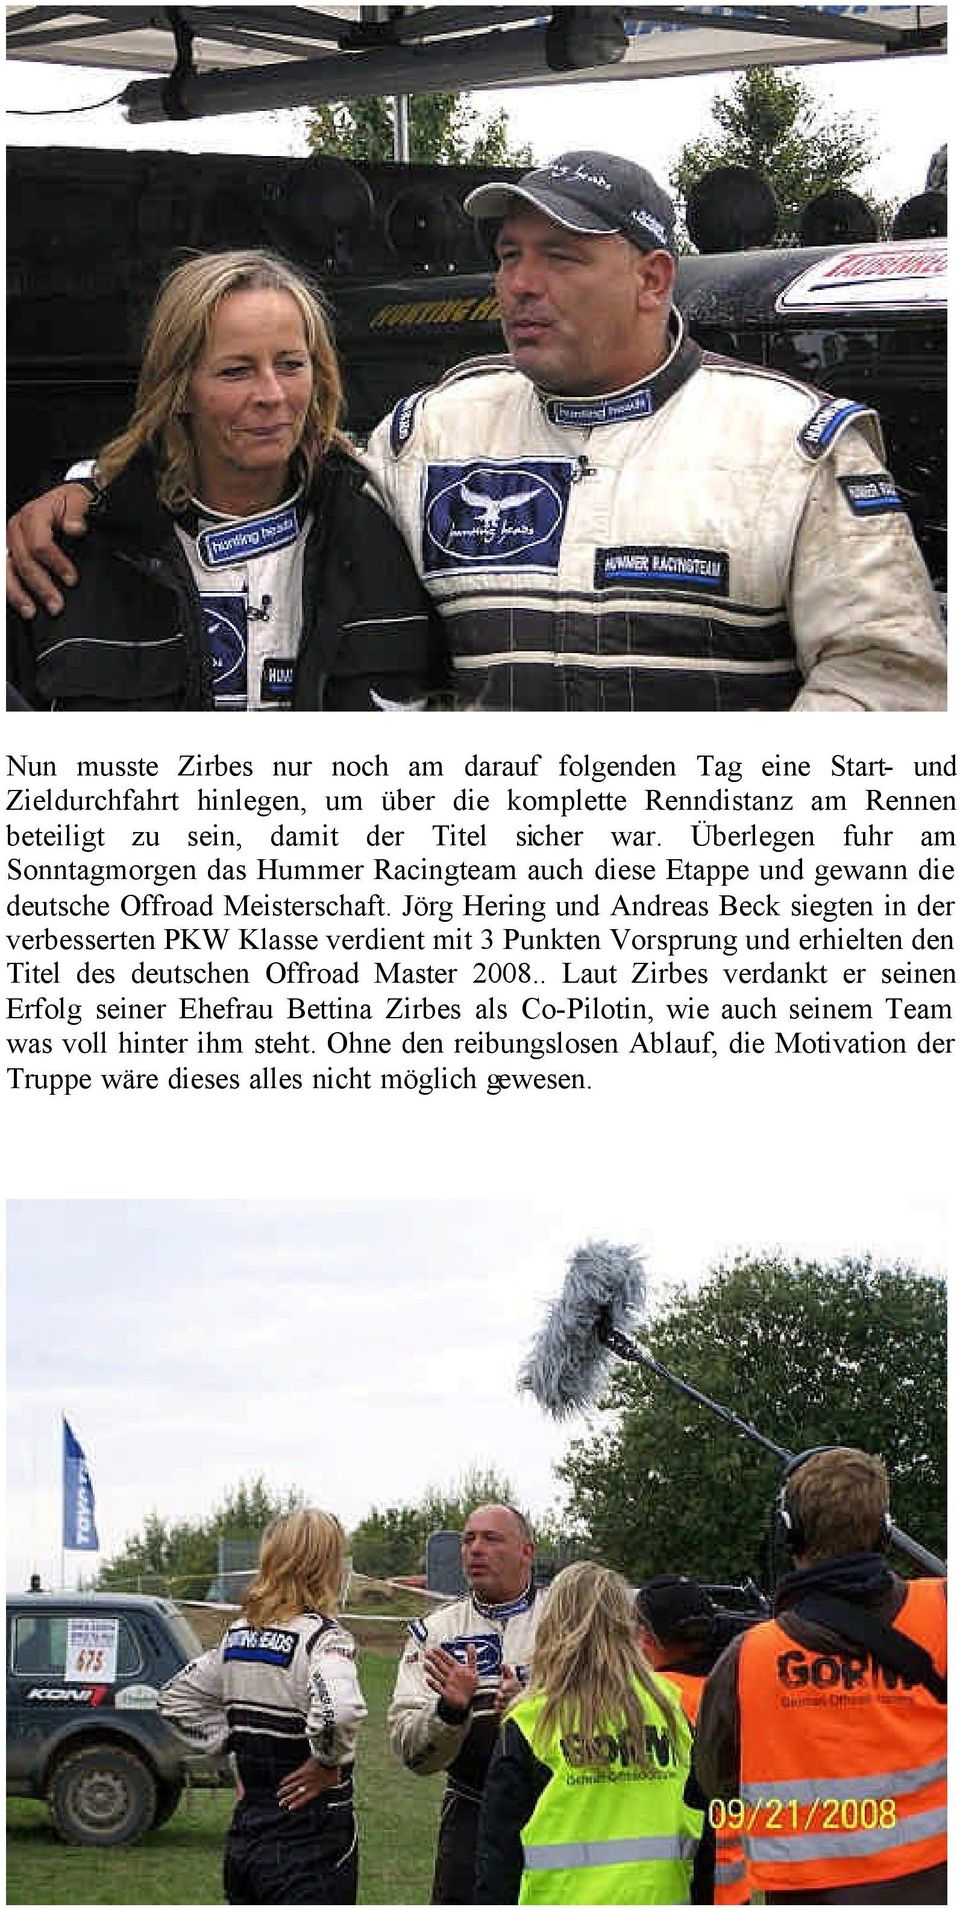 Jörg Hering und Andreas Beck siegten in der verbesserten PKW Klasse verdient mit 3 Punkten Vorsprung und erhielten den Titel des deutschen Offroad Master 2008.